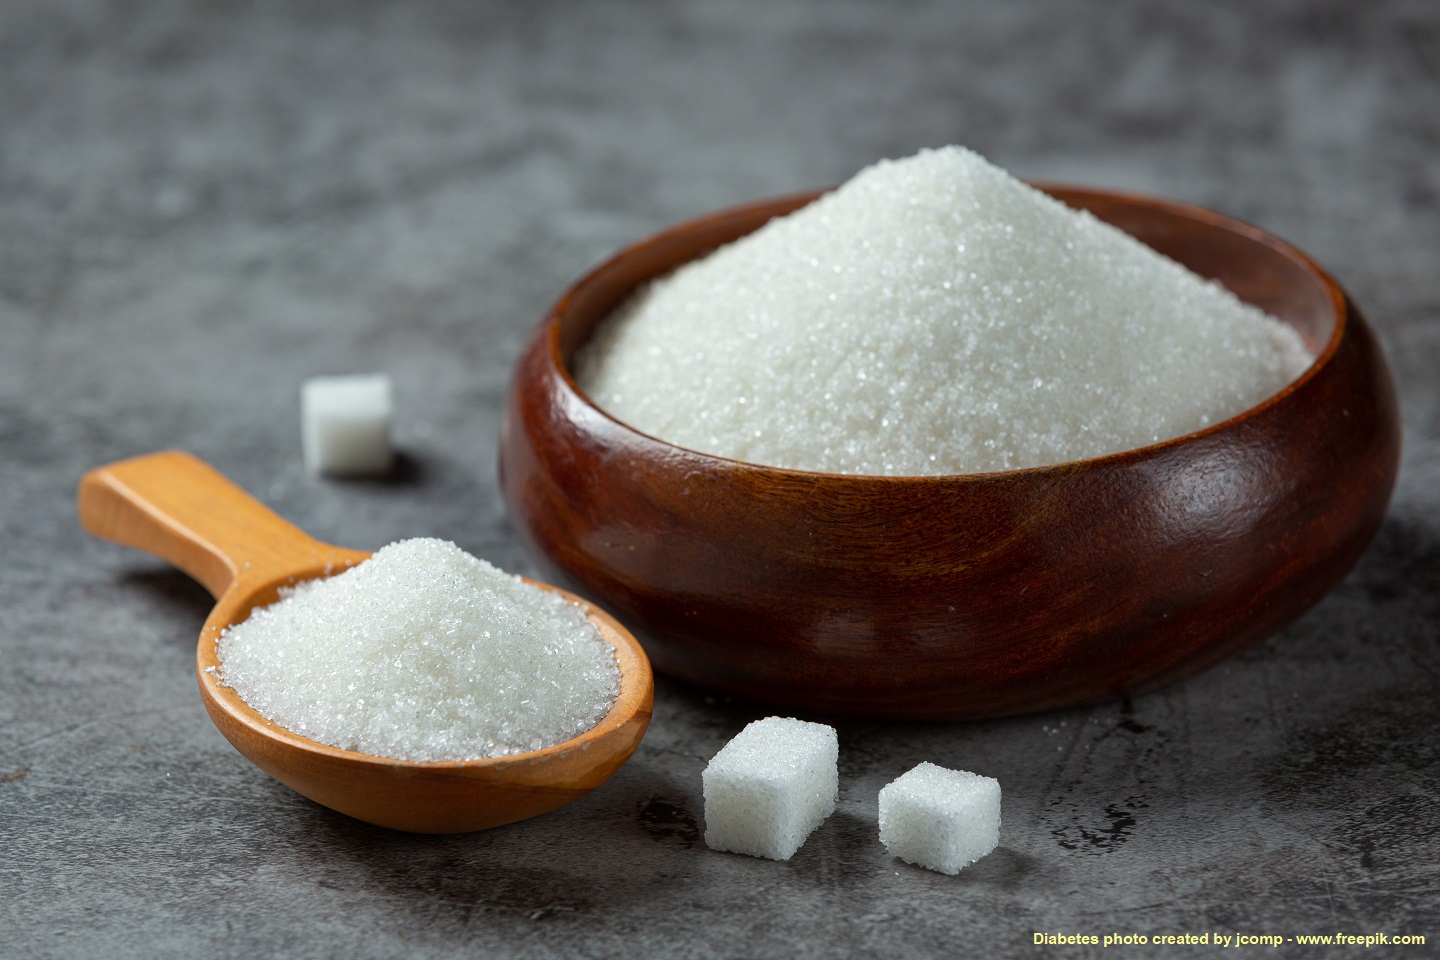 โรงงานน้ำตาลทรายยื่นหนังสือลาออกจาก กอน. ยันน้ำตาลทรายจะไม่ขาดตลาด